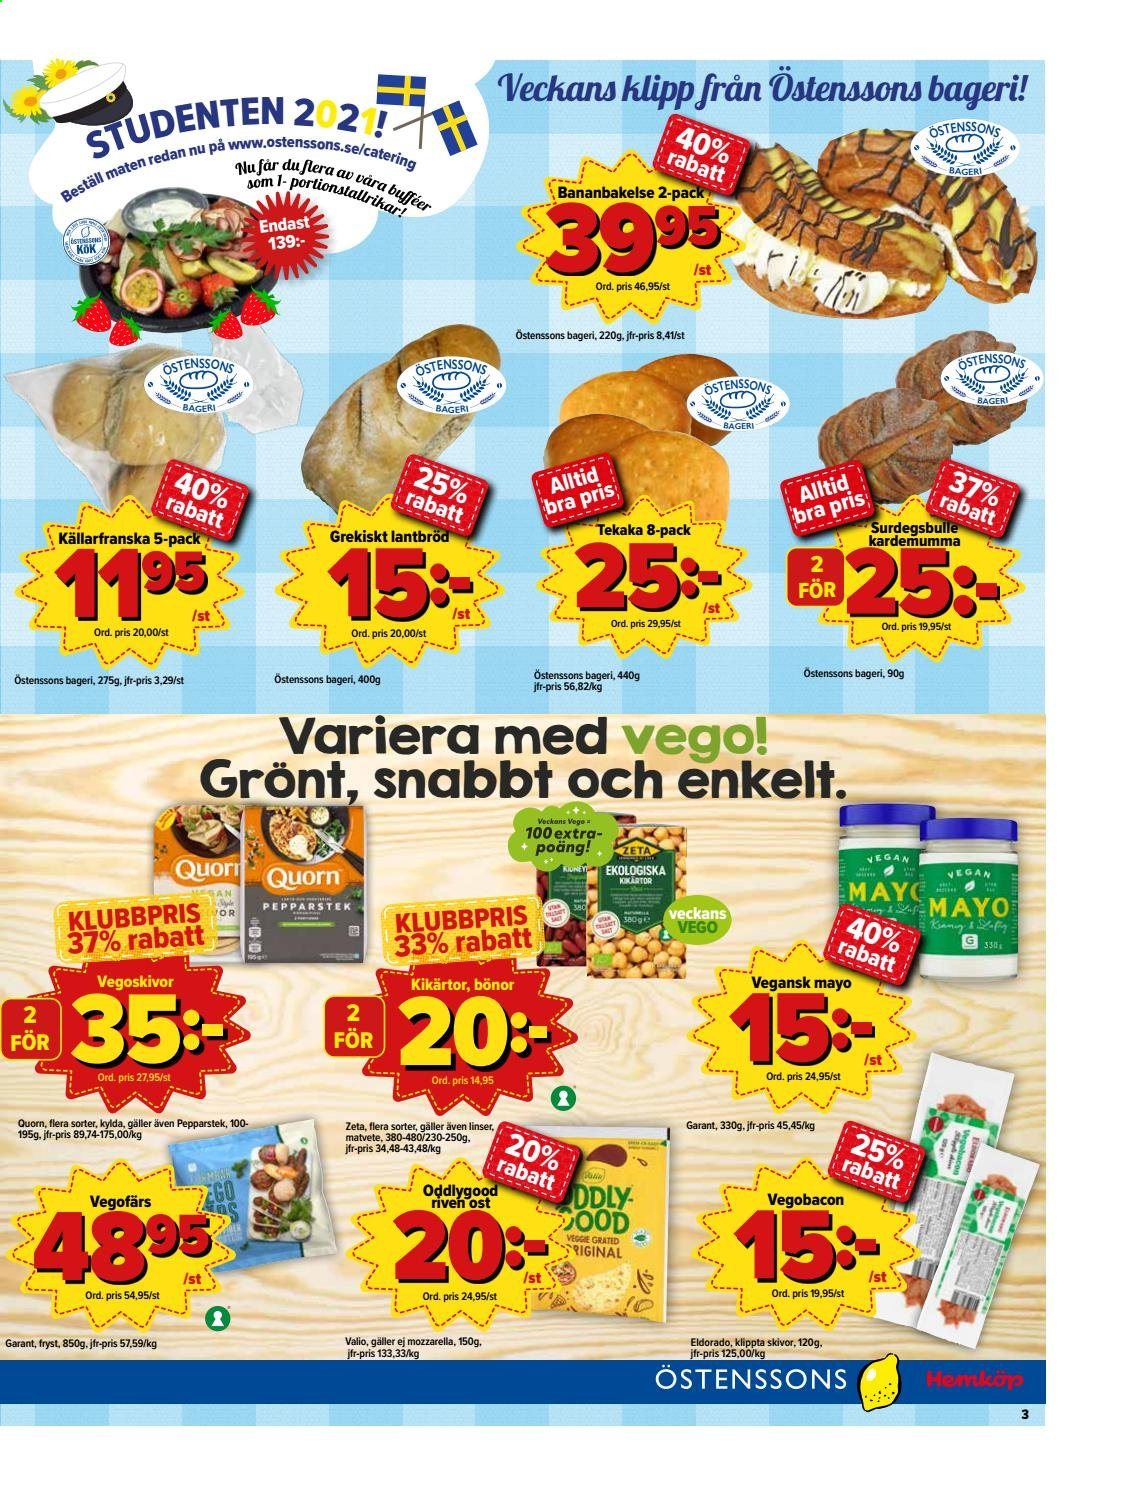 Östenssons reklamblad - 17/5 2021 - 23/5 2021.